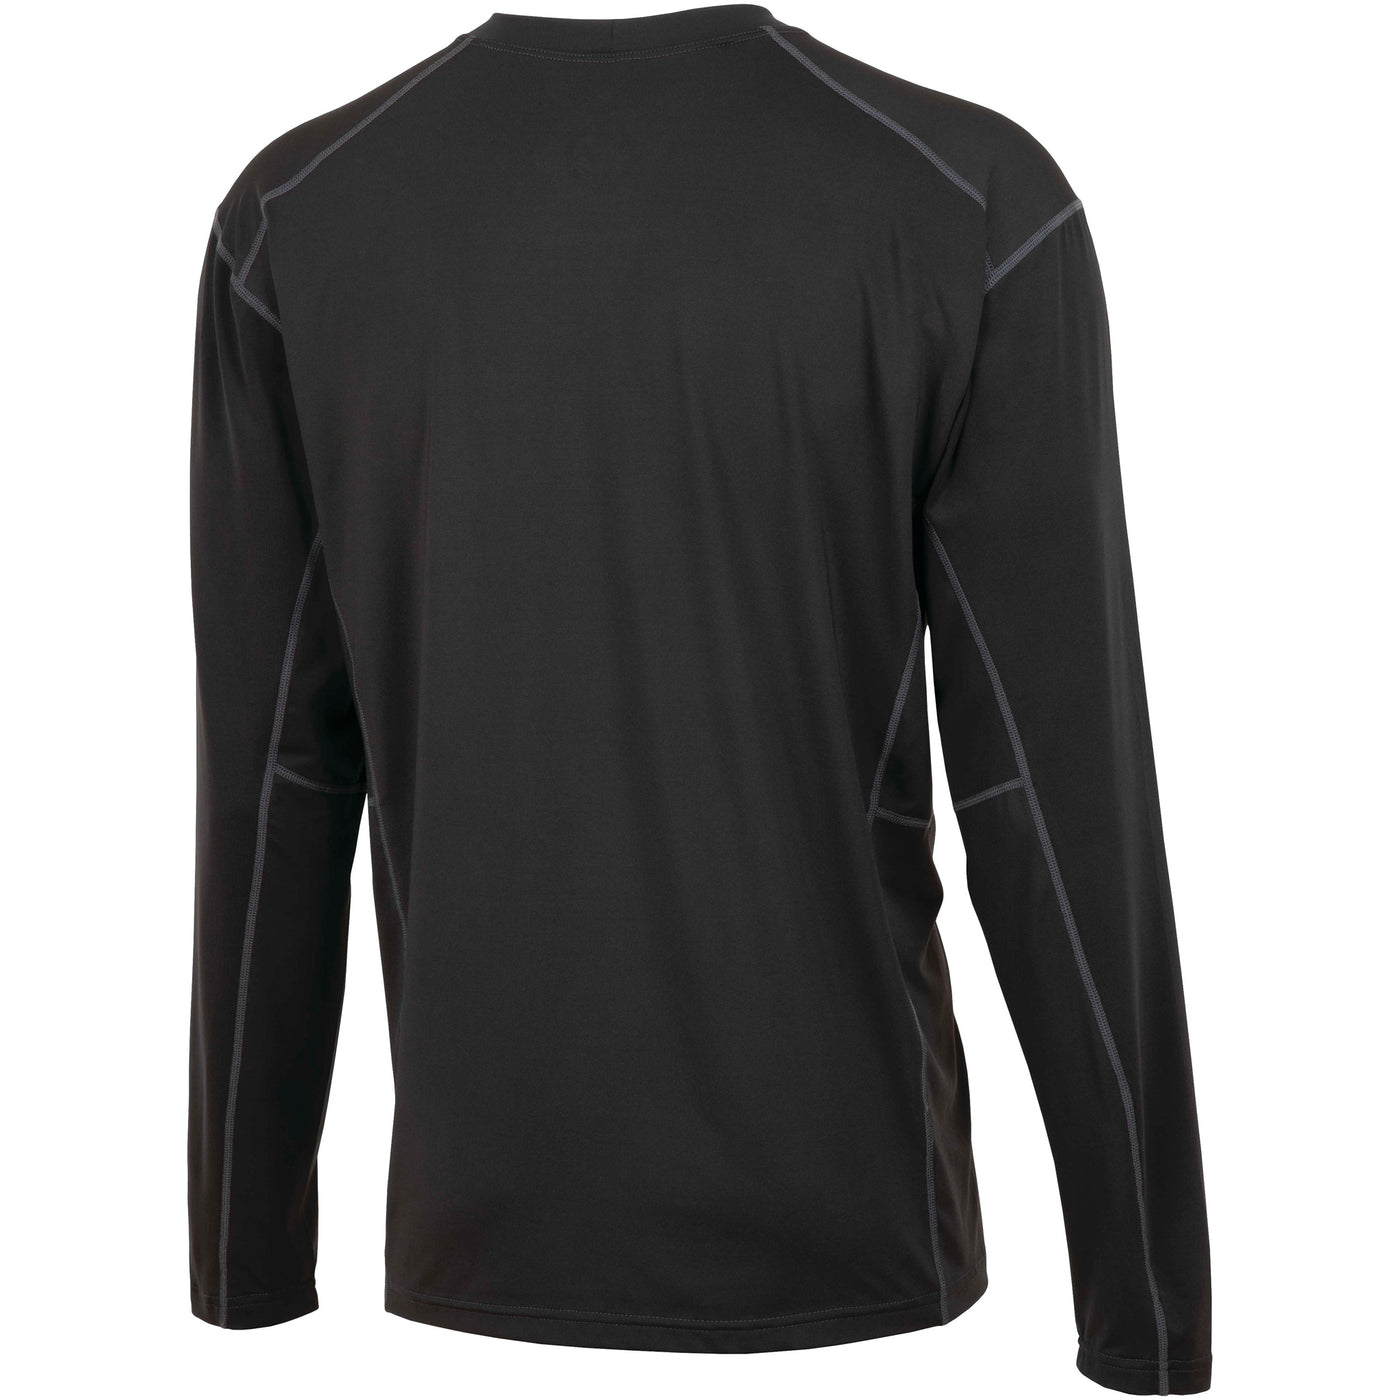 Firstgear Men's Lightweight Long Sleeve Base Layer Shirts